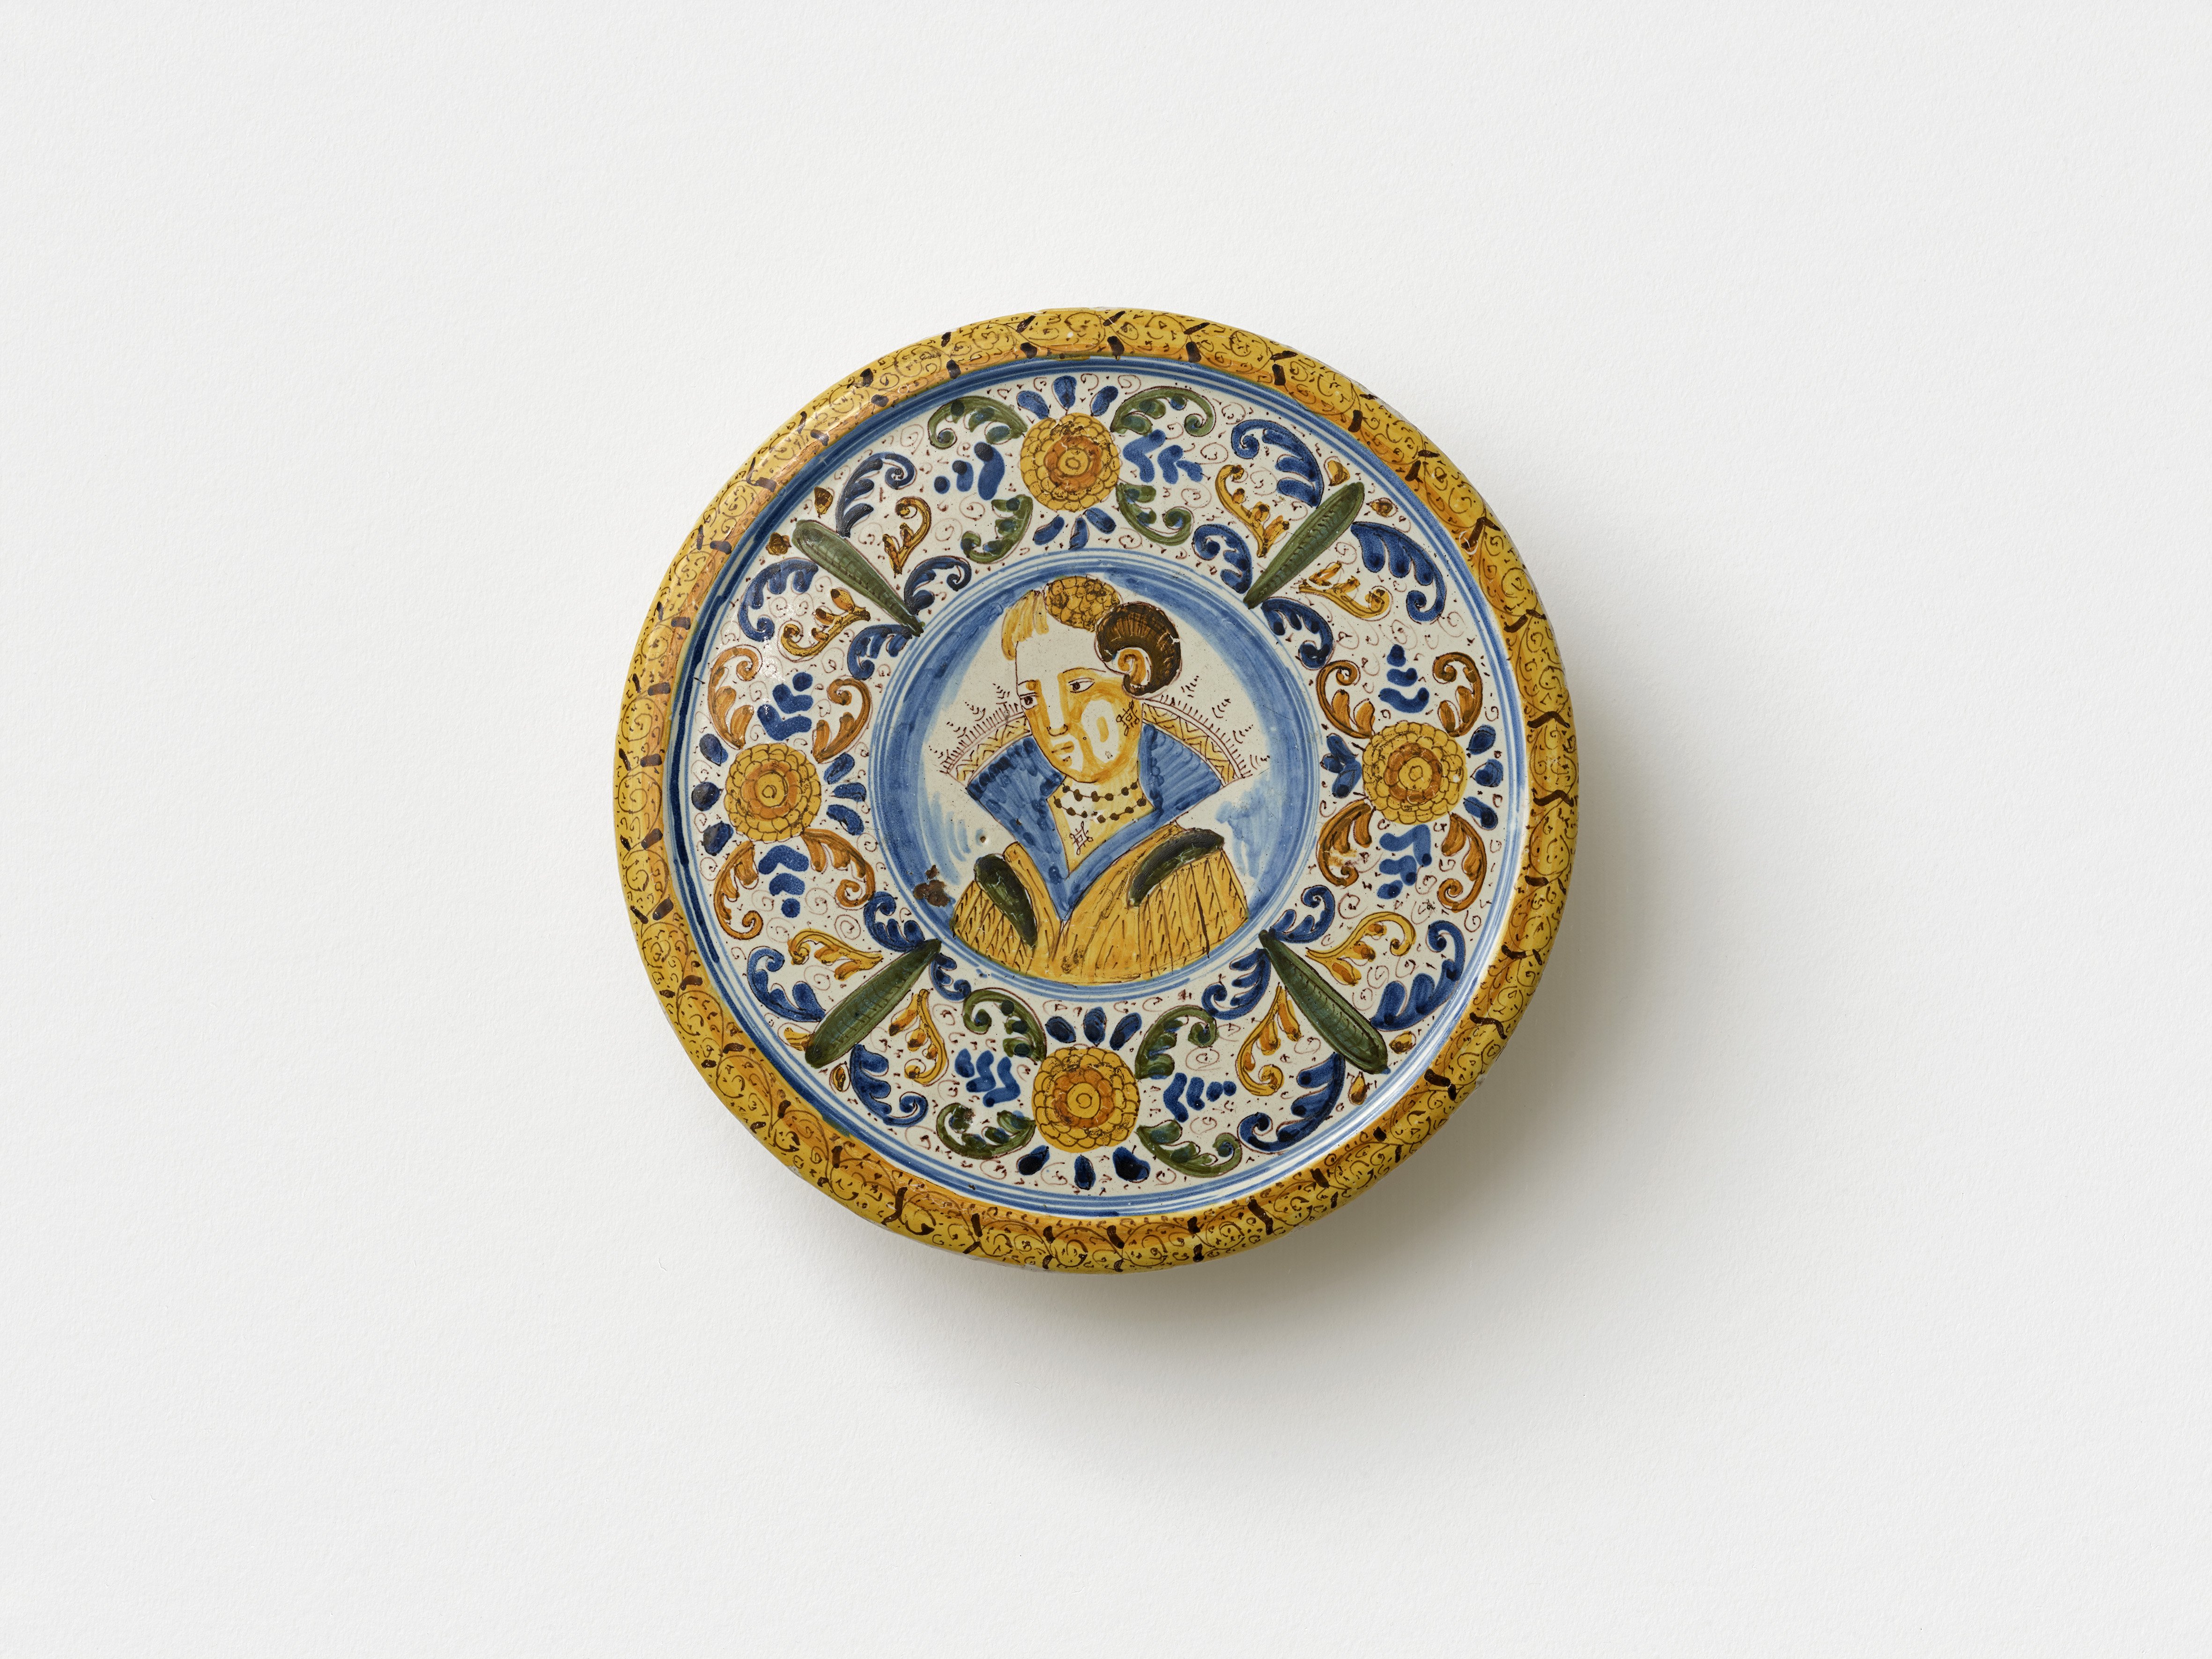 Fayence-Platte aus Delft, um 1600 (Städtisches Museum Schloss Rheydt CC BY)